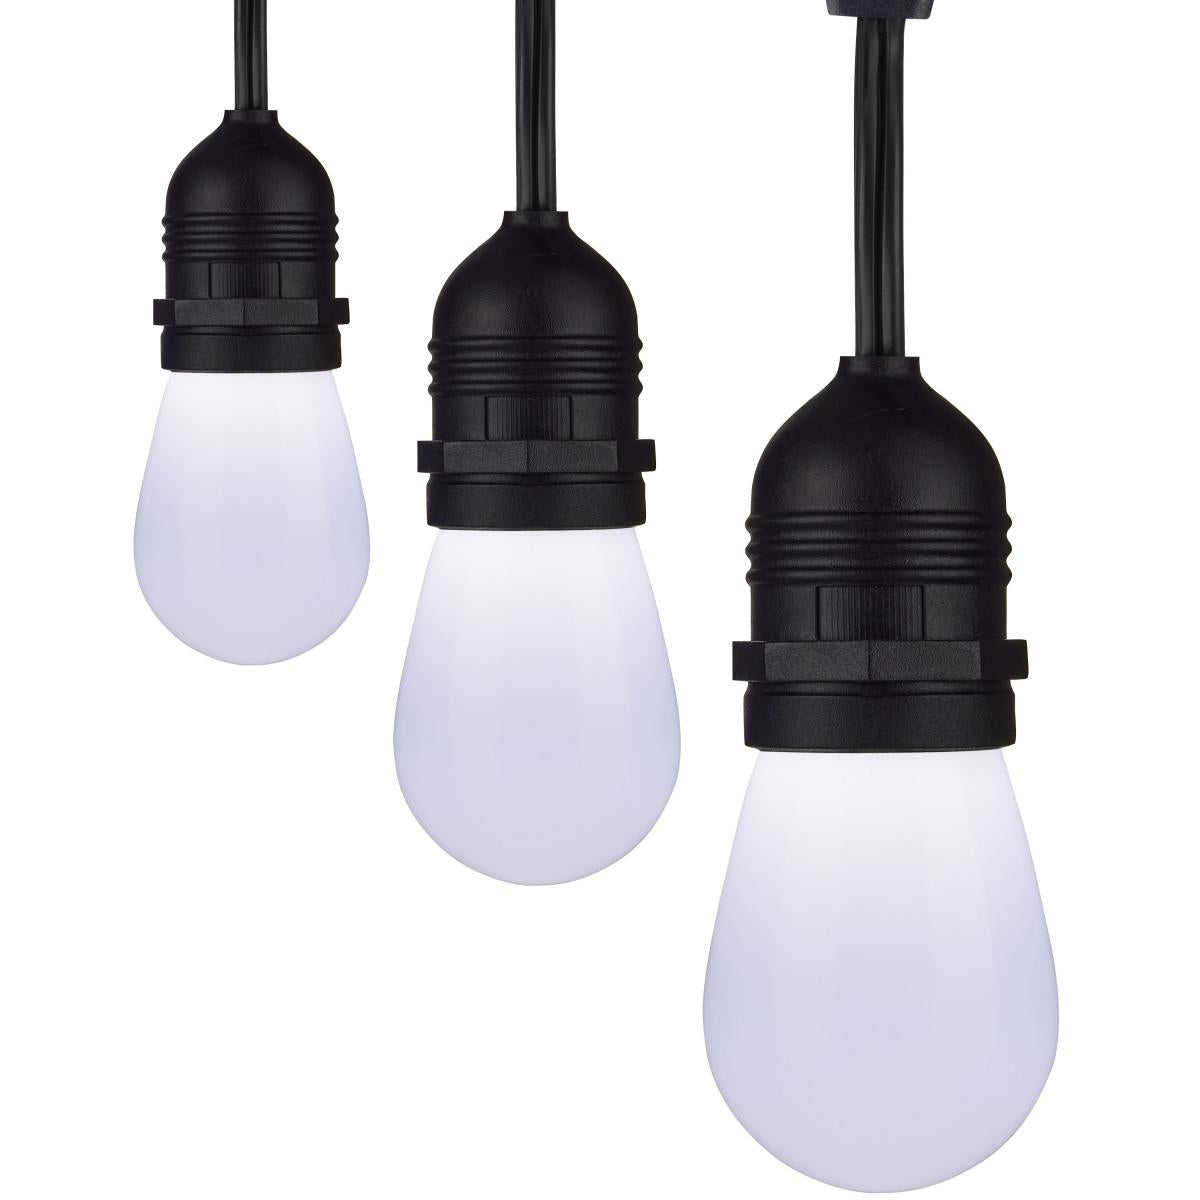 24Ft Smart Lighting Tunable White LED String Light